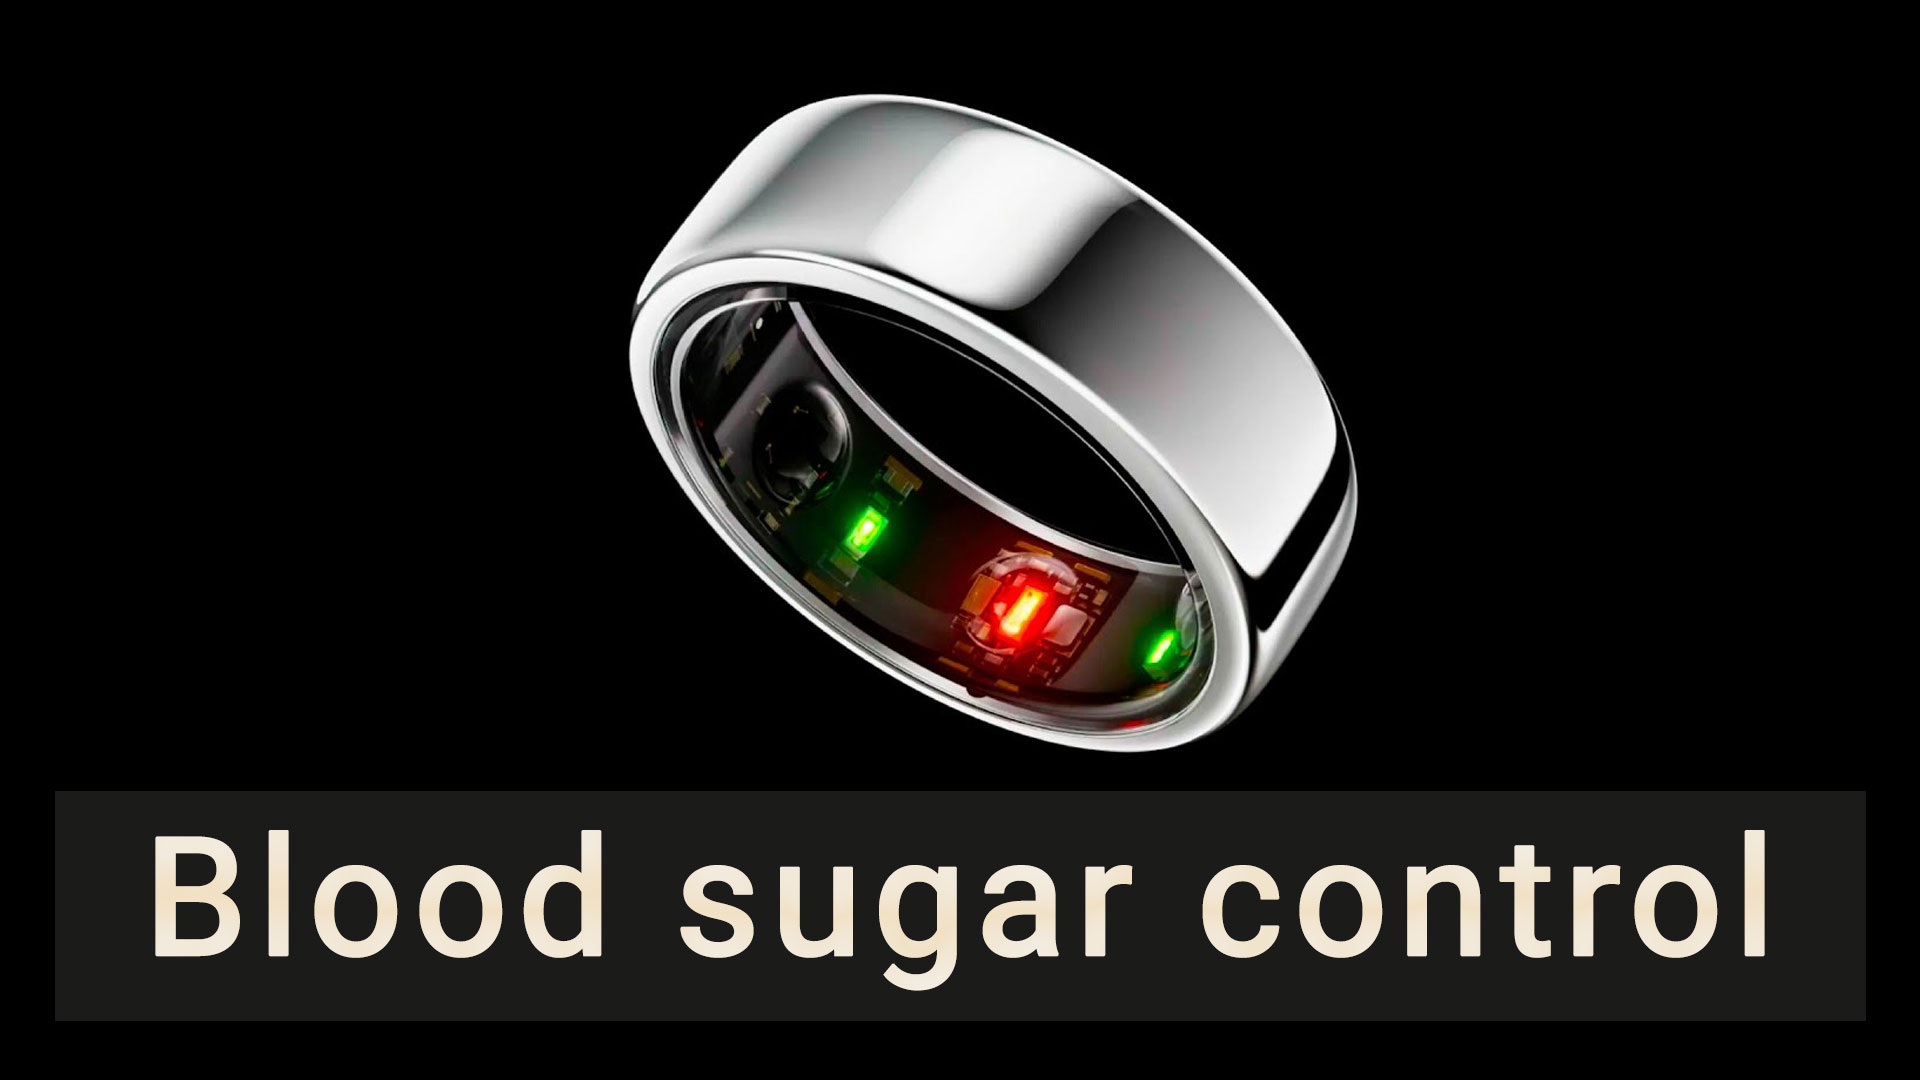 Blood sugar control